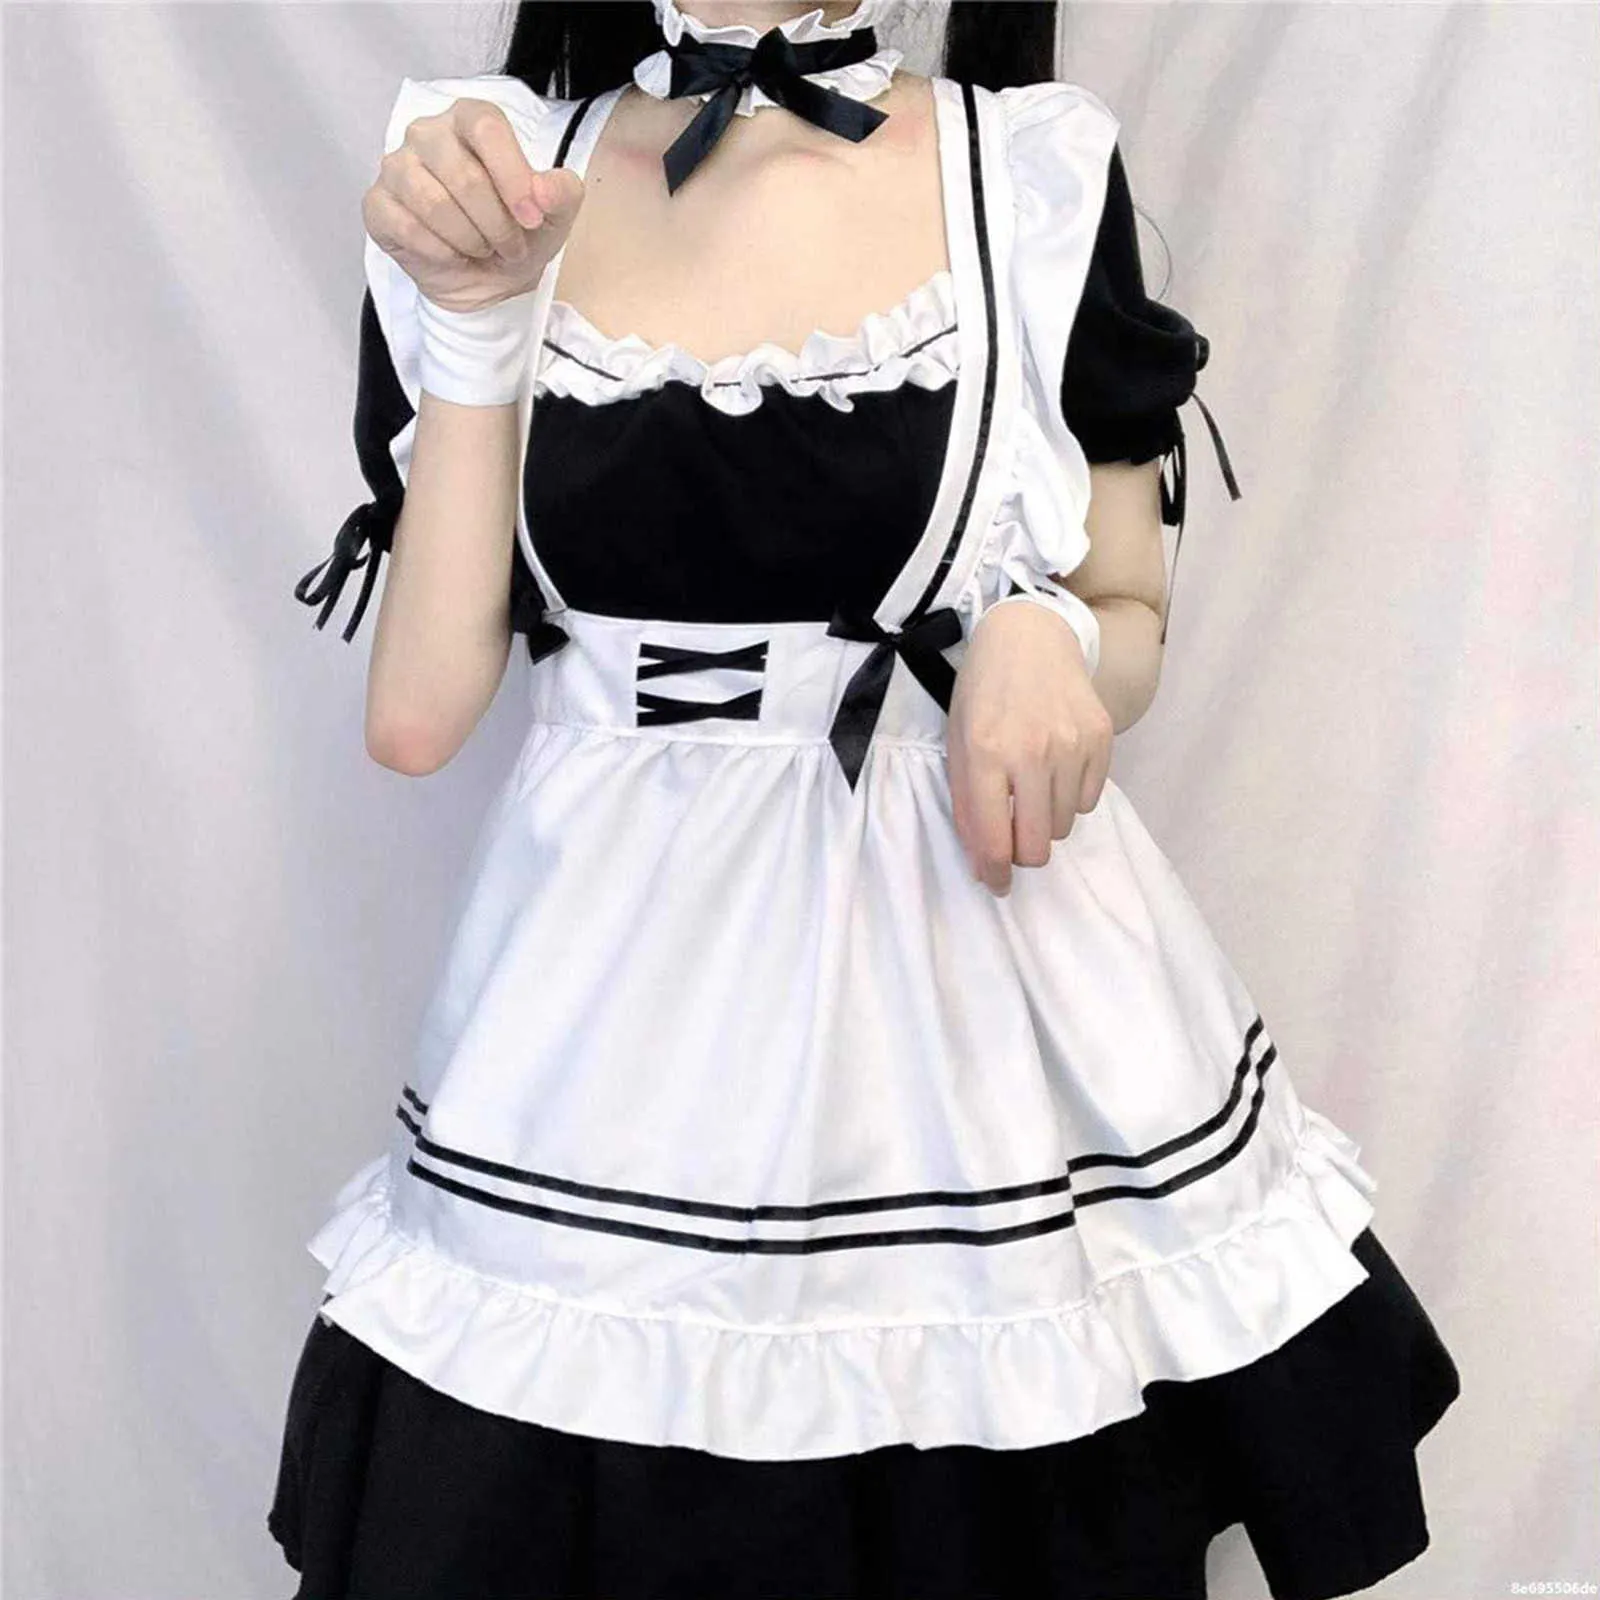 Belle femme de chambre Cosplay Costume Animation spectacle femmes japonaises tenue robe vêtements Anime serveuse jeu de rôle Lolita vêtements Y0913